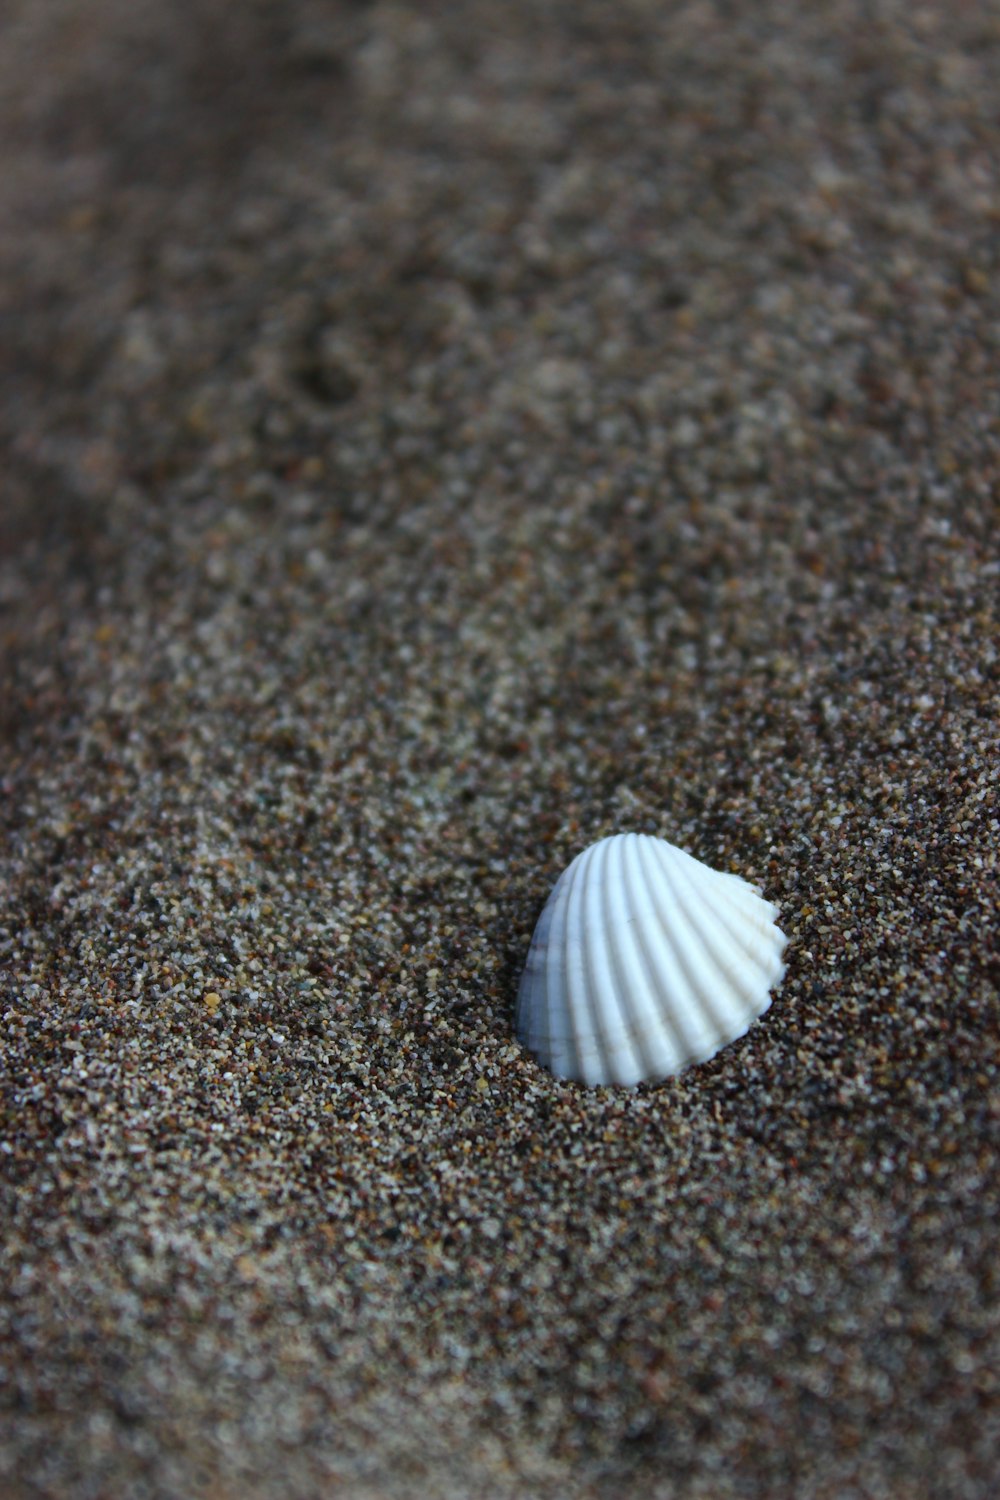 white shell